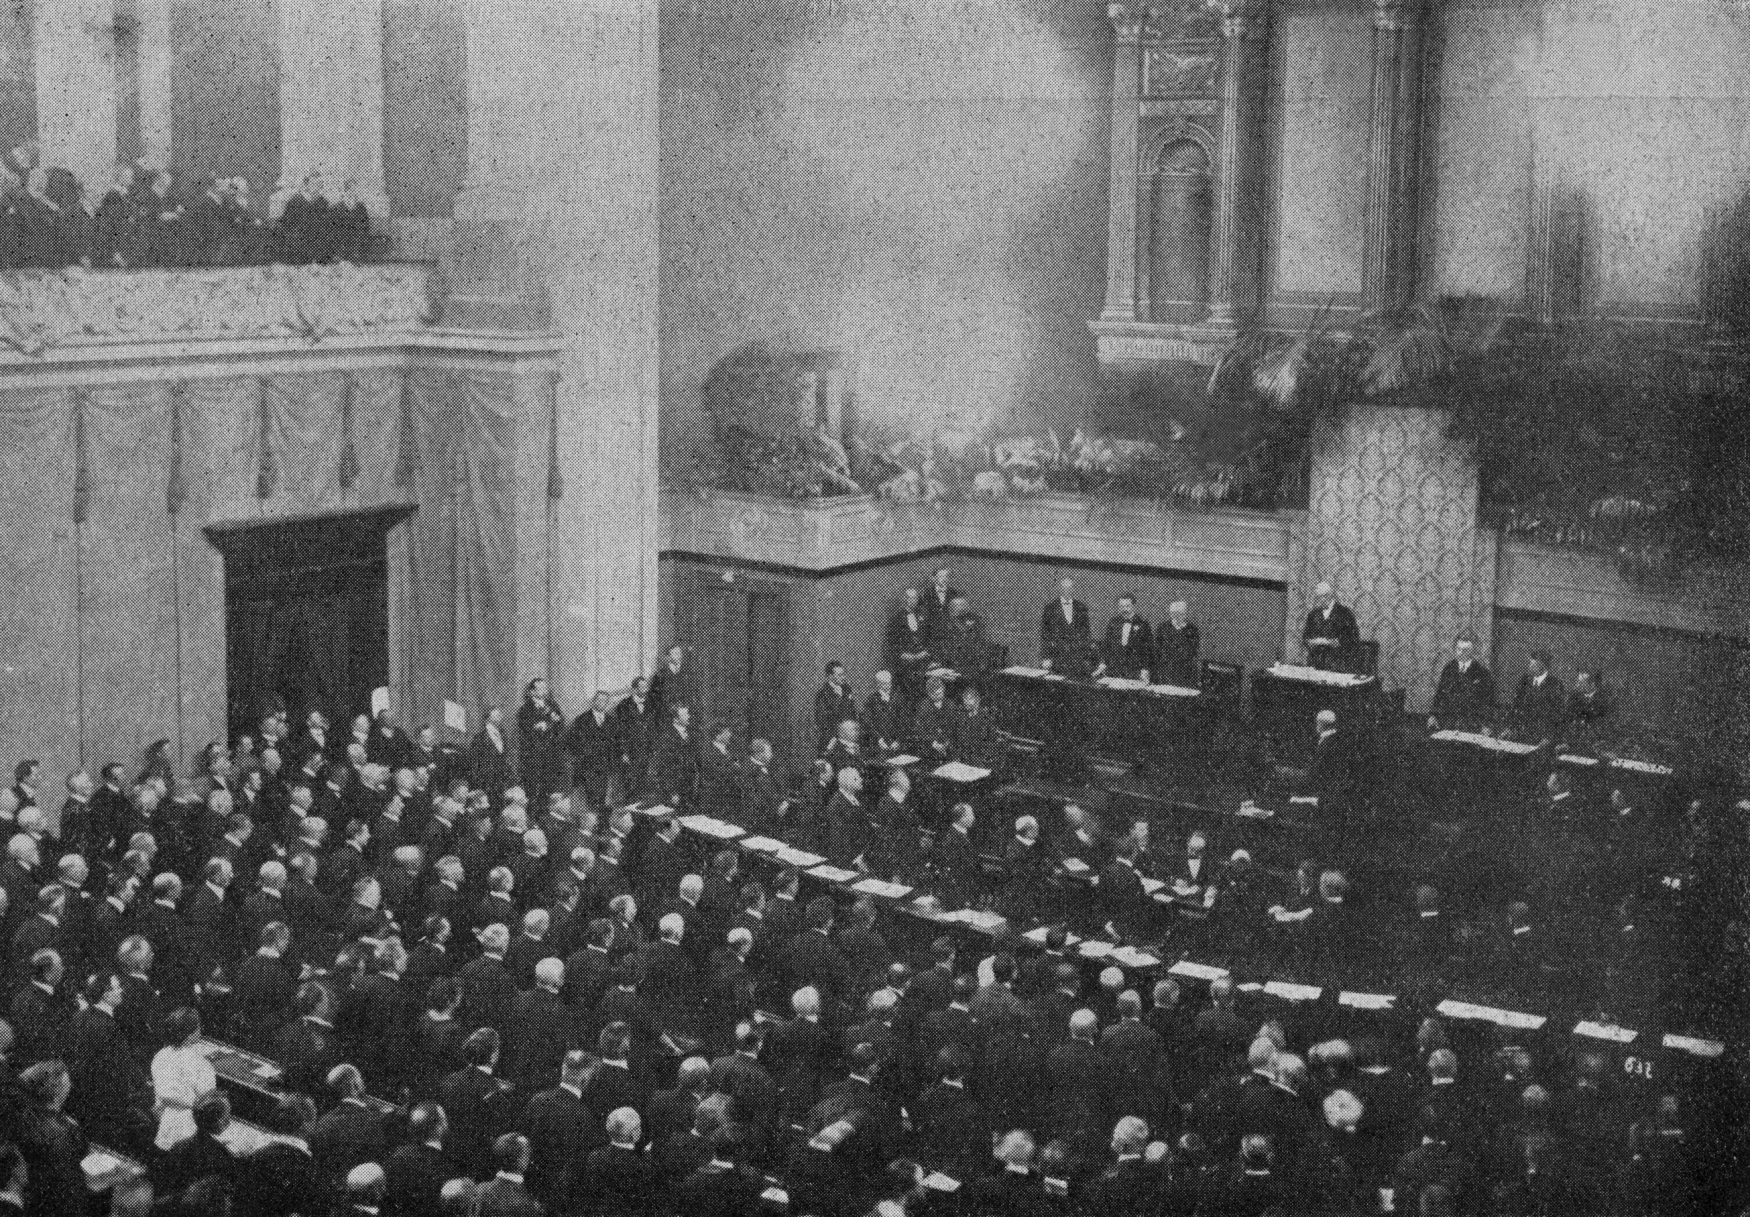 Prezident Masaryk skládá slib na ústavu na slavnostní společné schůzi Národního shromáždění a Senátu v budově parlamentu, 27. května 1920